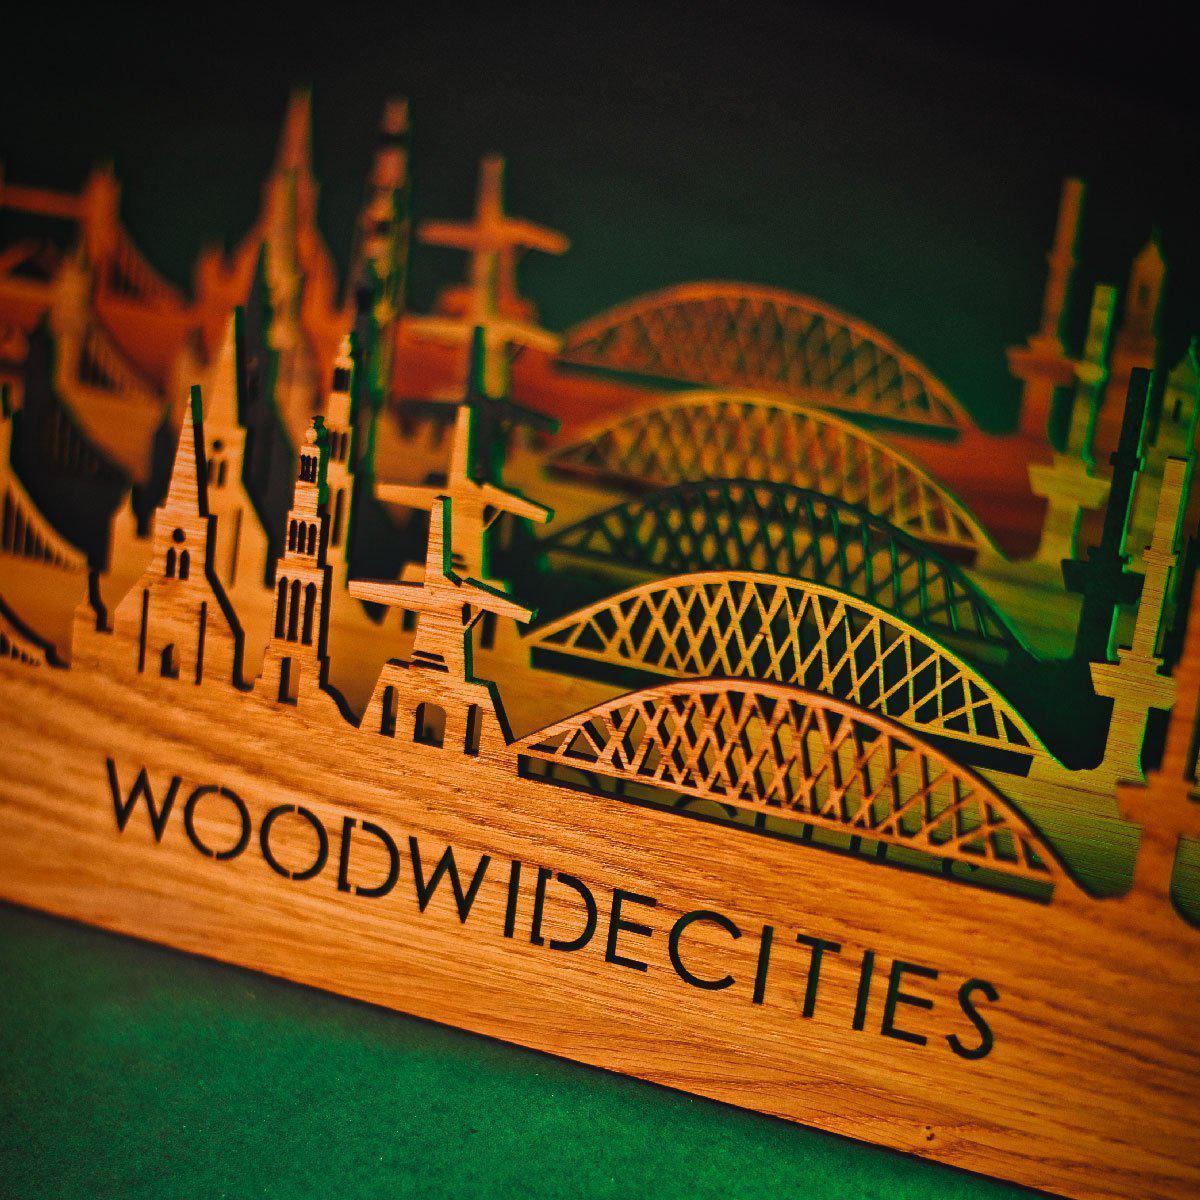 Skyline Klok Leeuwarden Black houten cadeau wanddecoratie relatiegeschenk van WoodWideCities